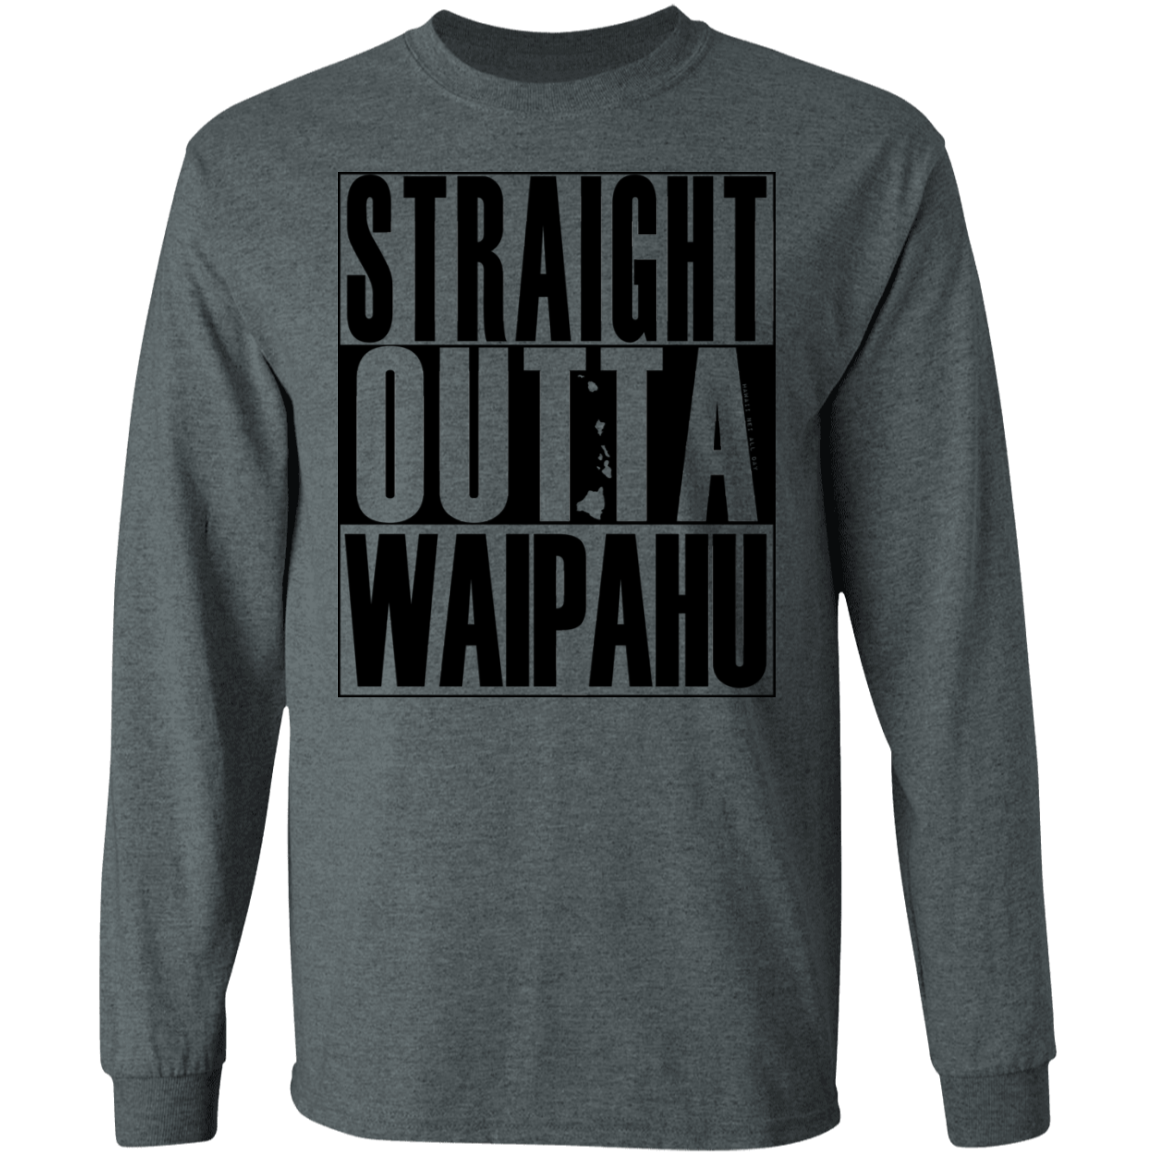 Straight Outta Waipahu (black ink) LS T-Shirt